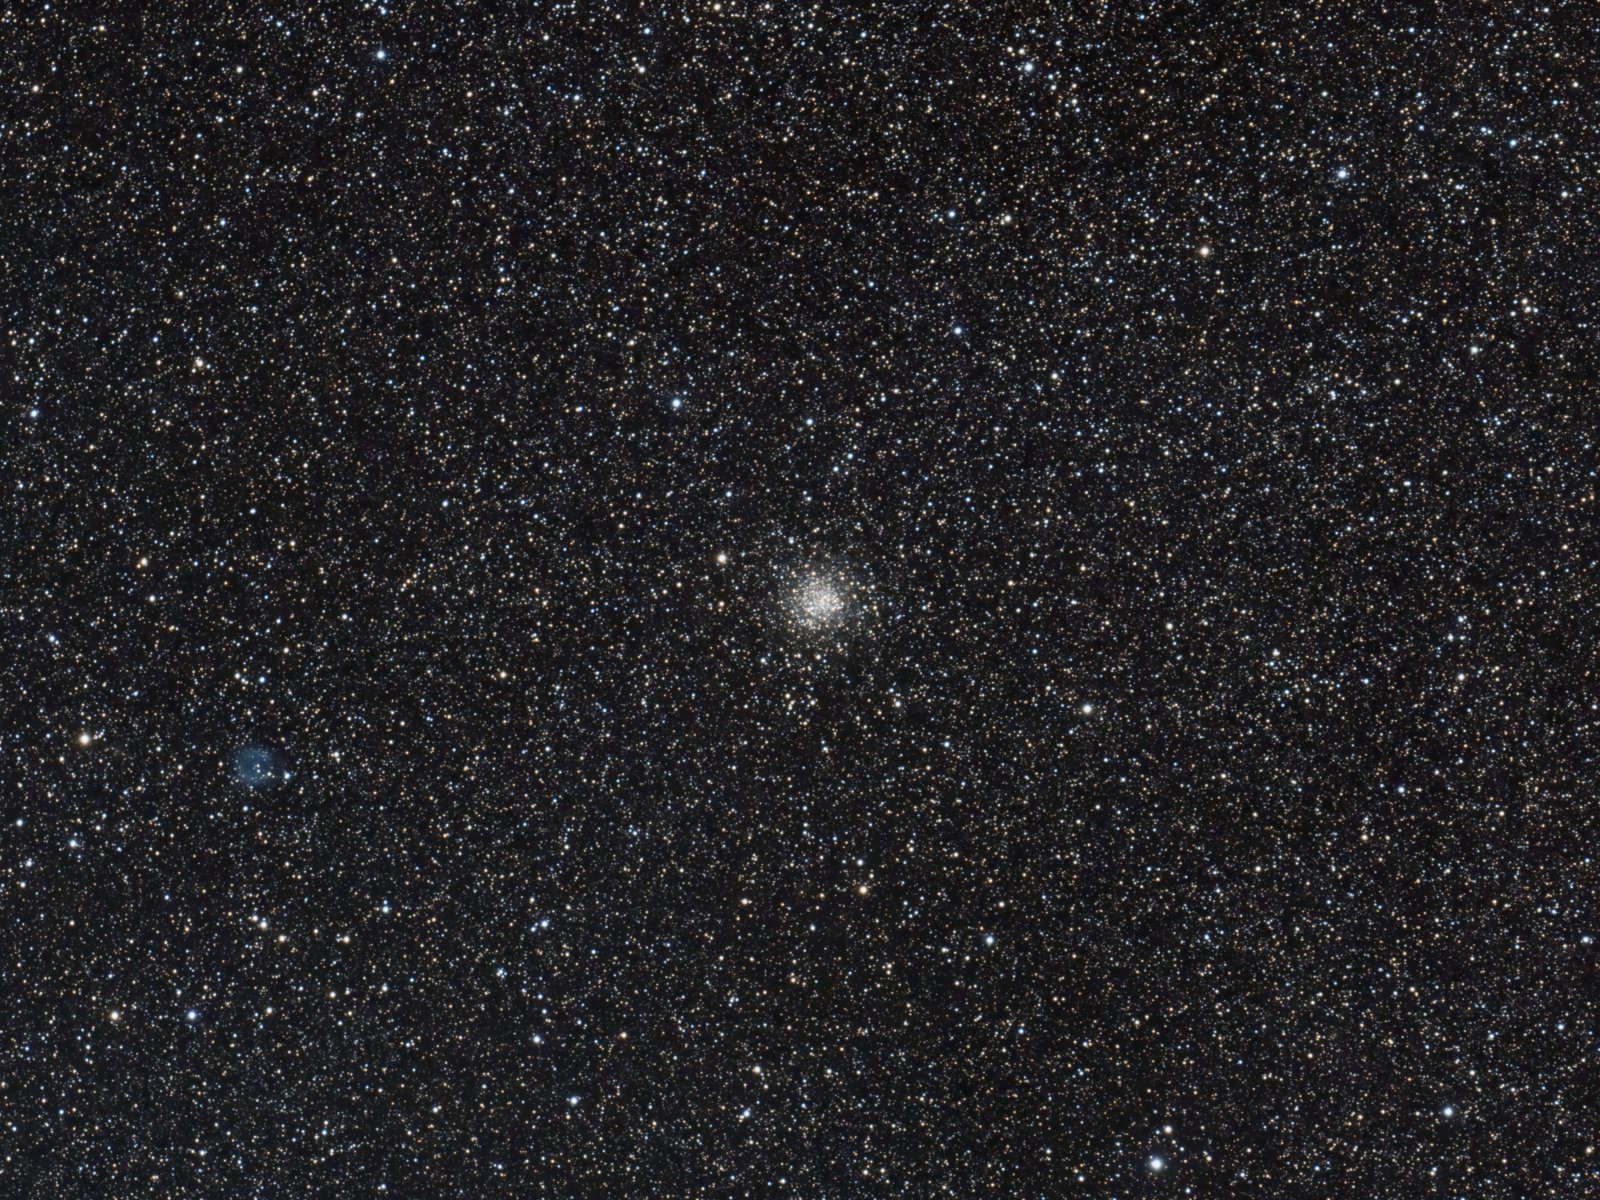 NGC 6712 and IC 1295